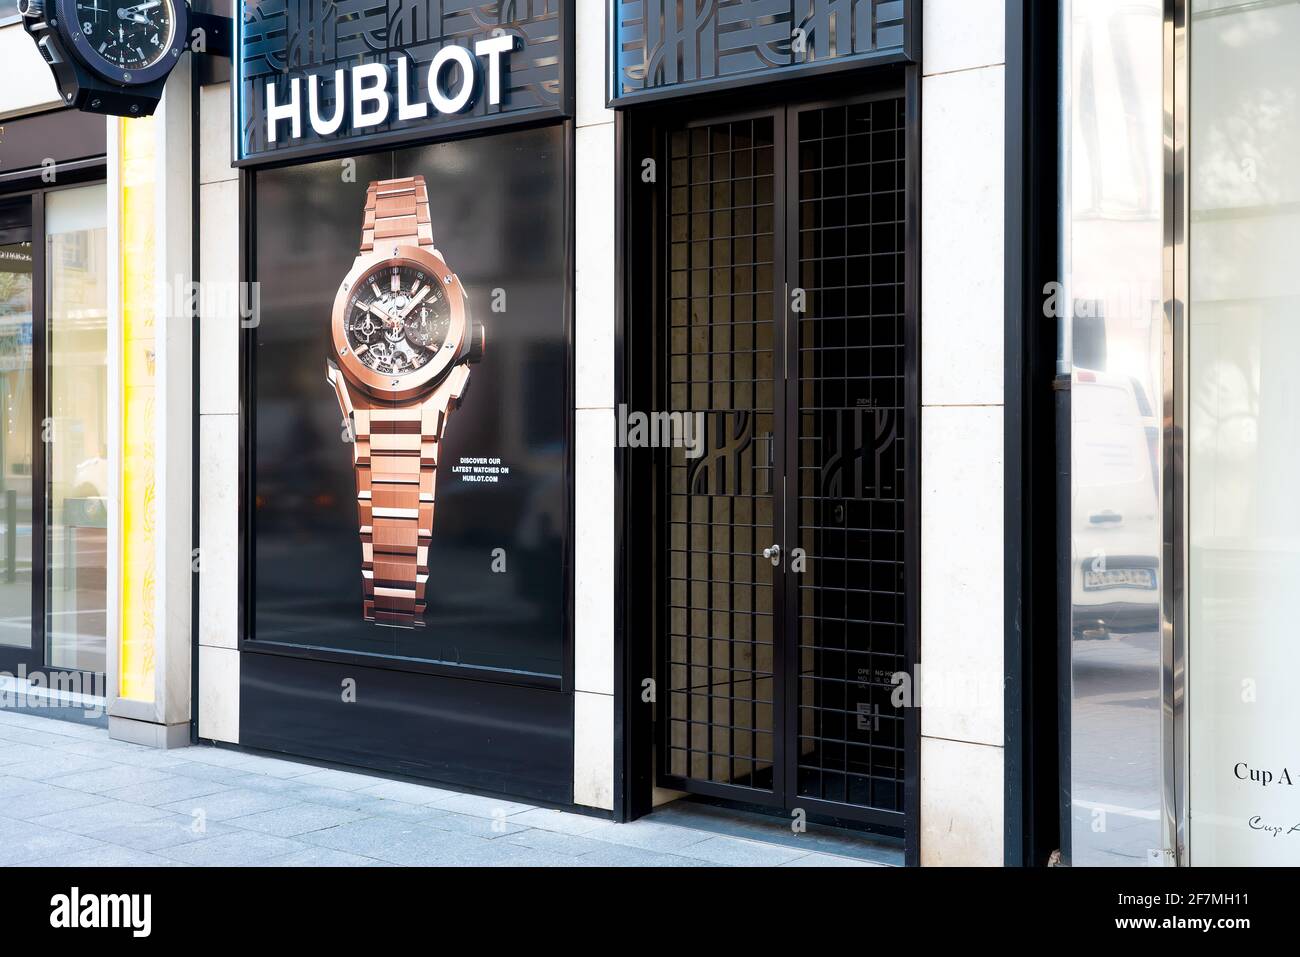 Frankfurt 03/2020: Hublot cerrado debido a la pandemia de Corona. Hublot reloj de moda suizo de gama alta tienda de joyas / tienda de la parte delantera de la tienda en Frankfurt Alemania. Foto de stock